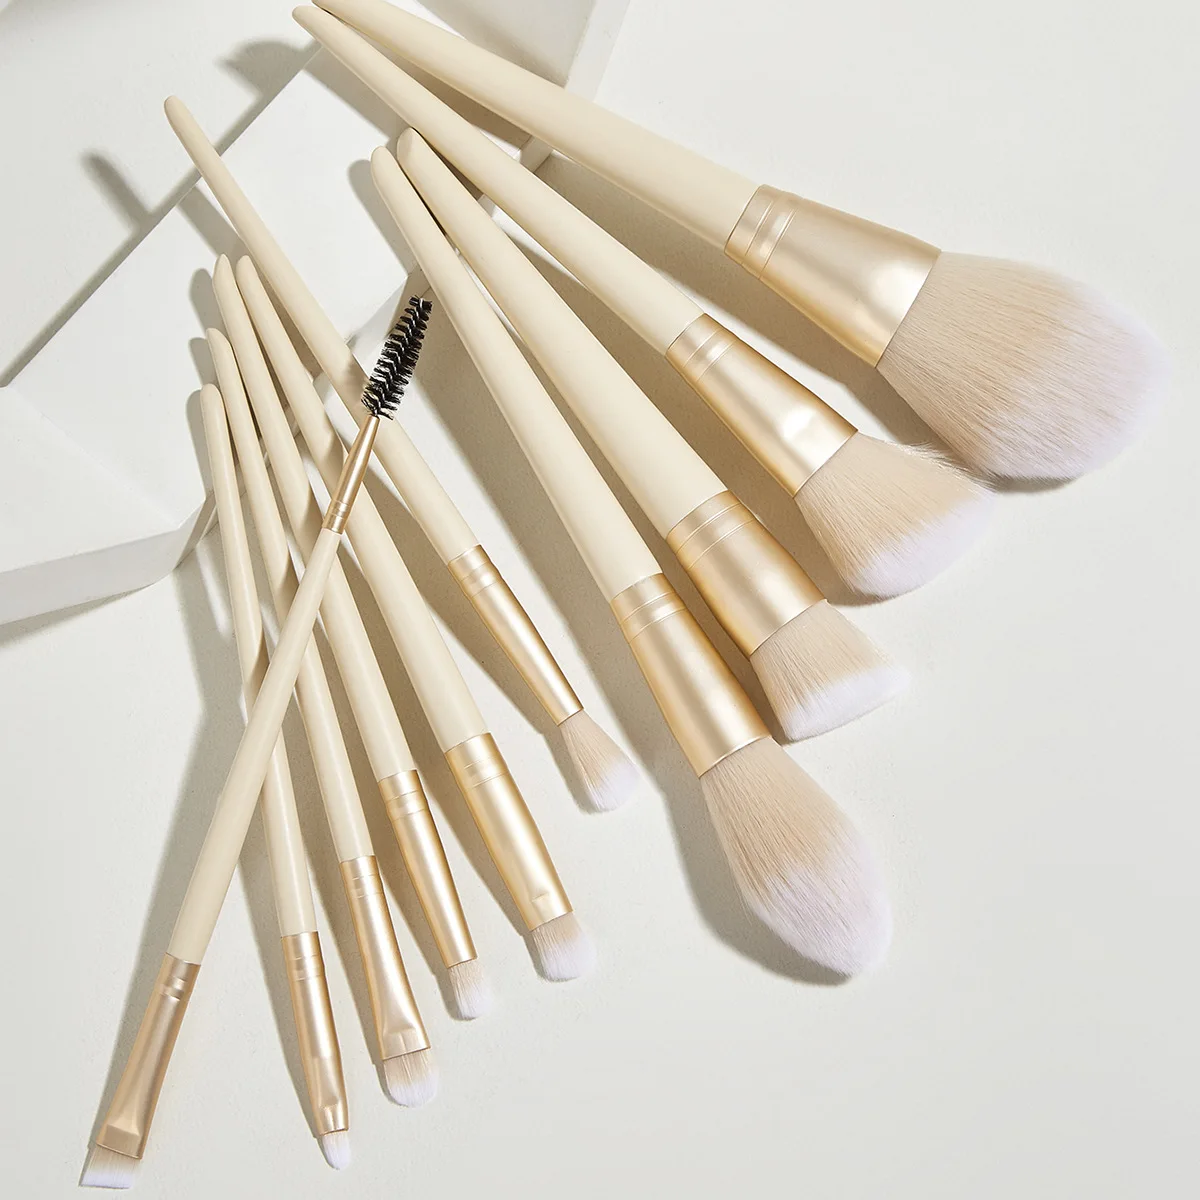 

10Pcs Professional Eyes Makeup Brushes Set Wood Handle Eyeshadow Eyebrow Eyeliner Blending Powder Smudge Brush